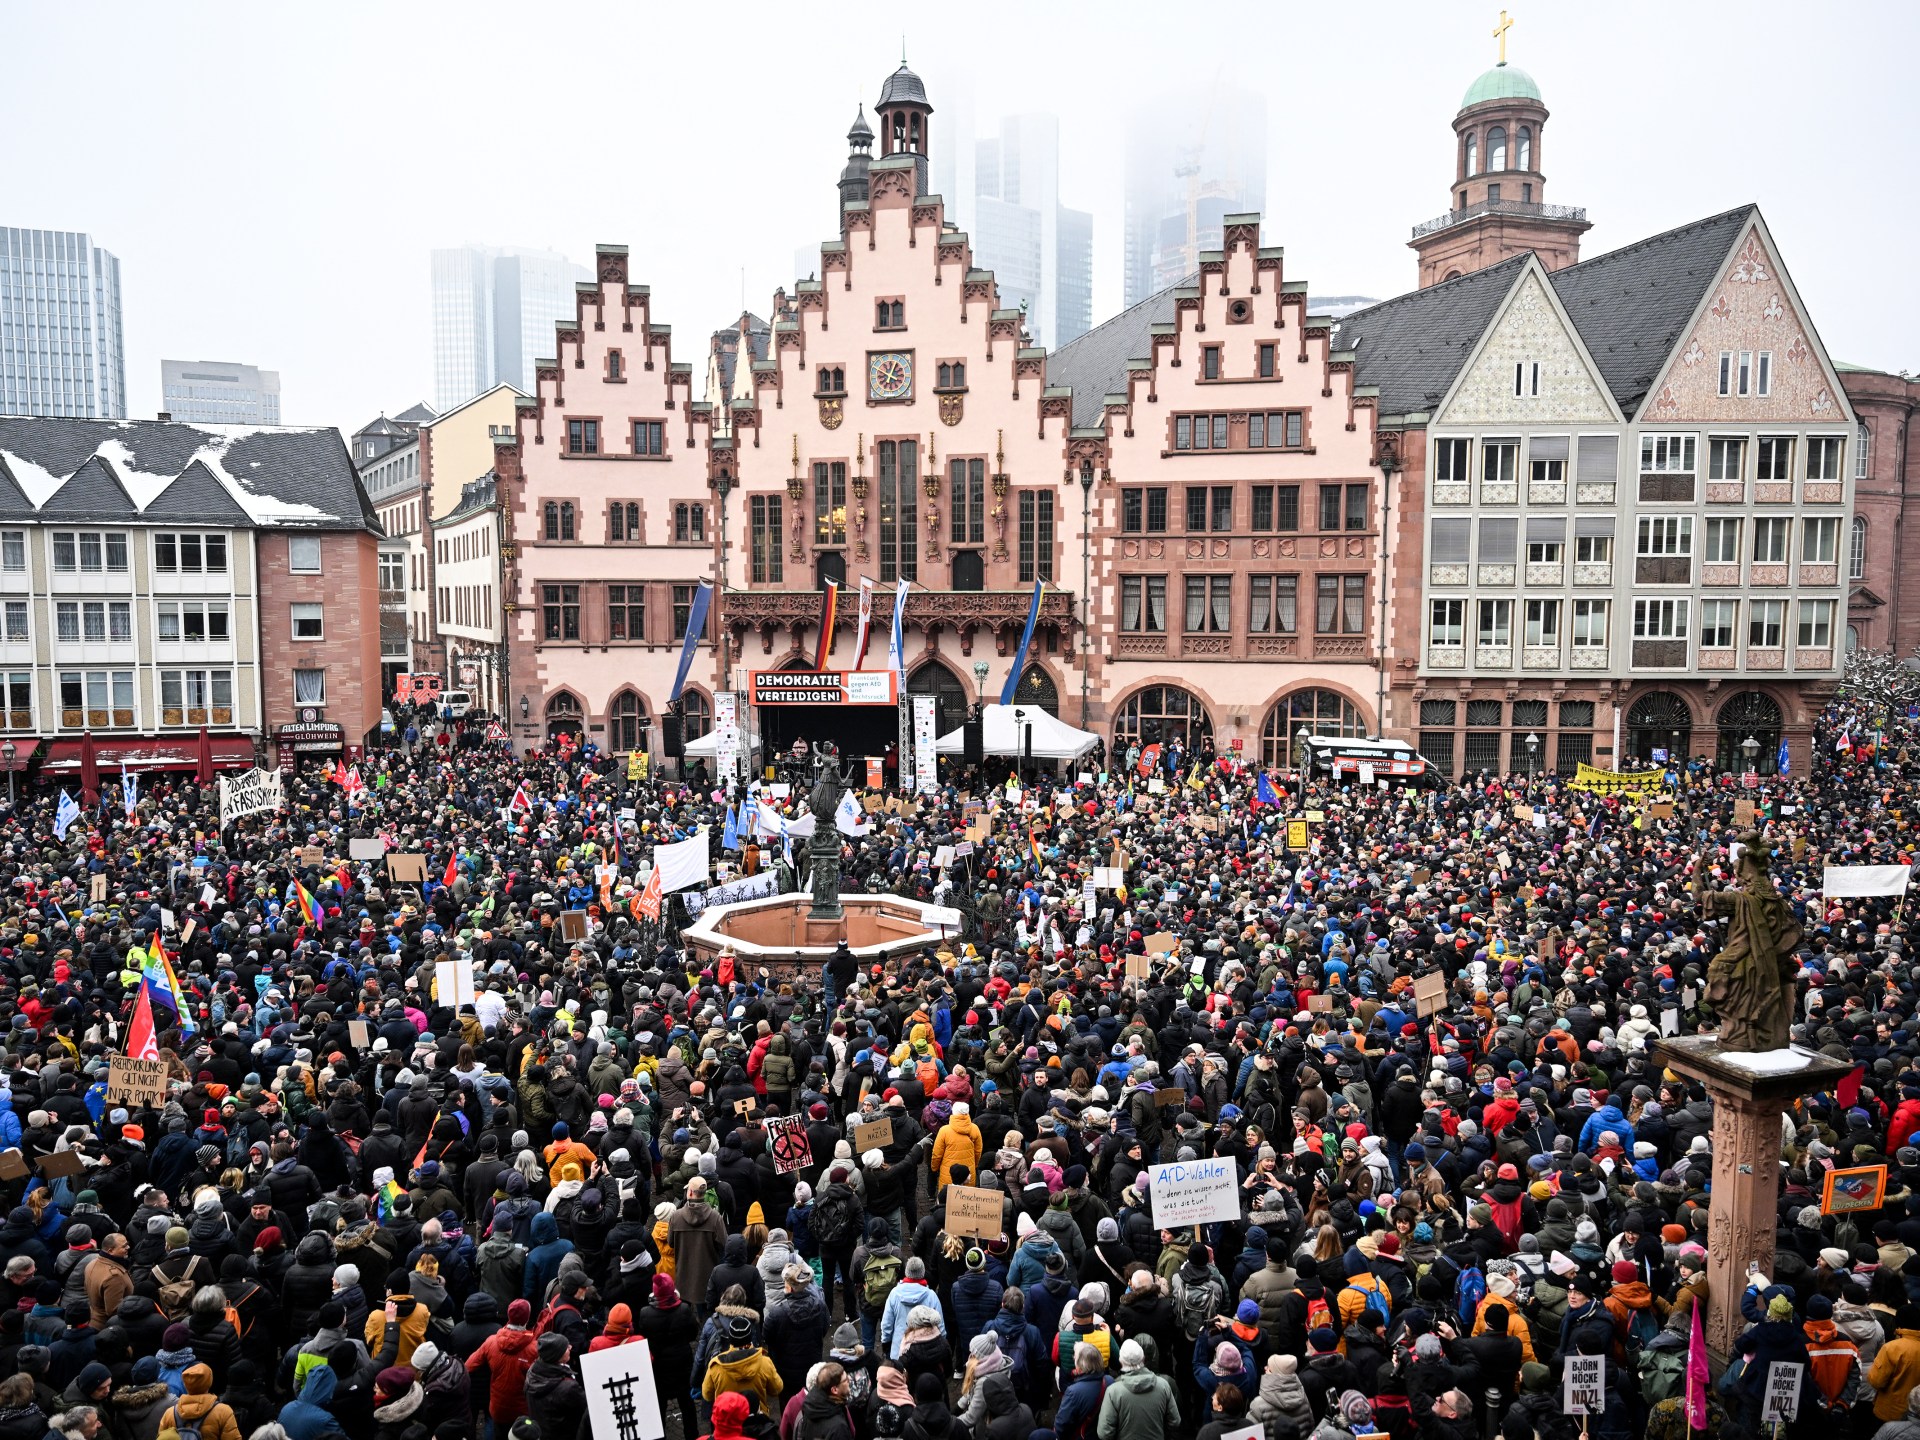 Puluhan ribu orang berdemonstrasi di Jerman menentang kelompok sayap kanan  Berita sayap kanan